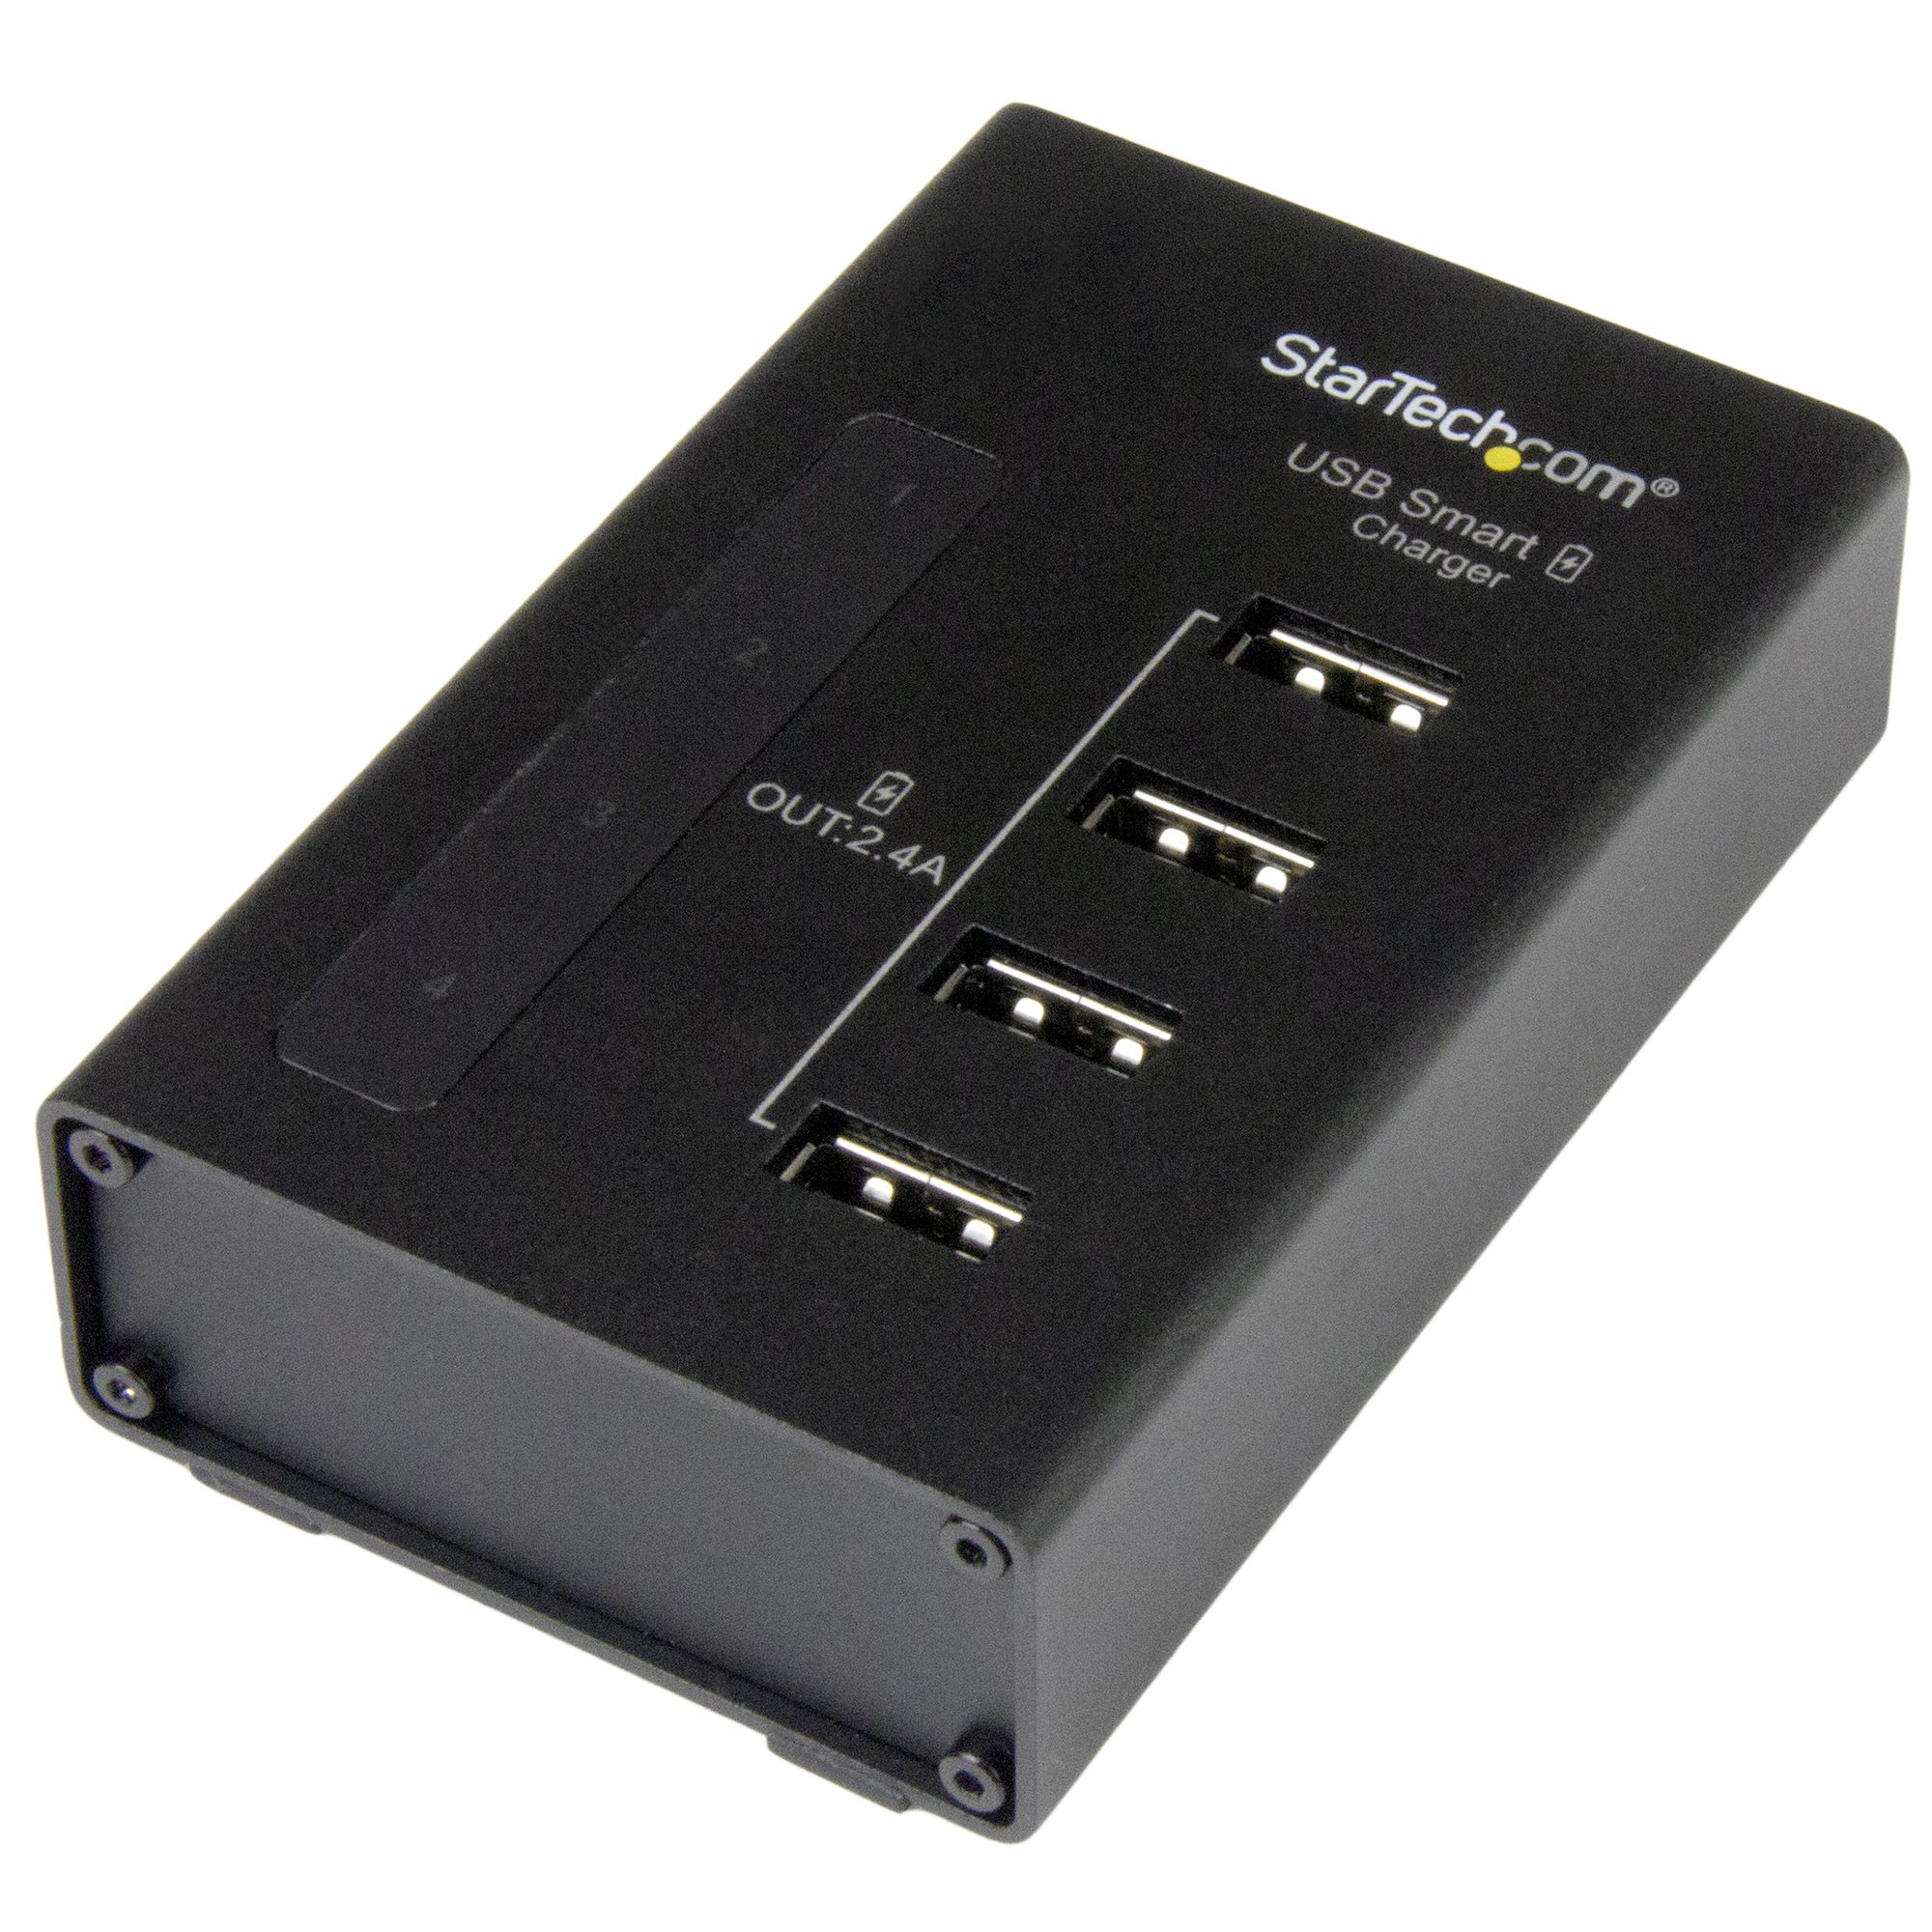 4-Port USB Station - 48W/9.6A USB Adapters (USB 2.0) |